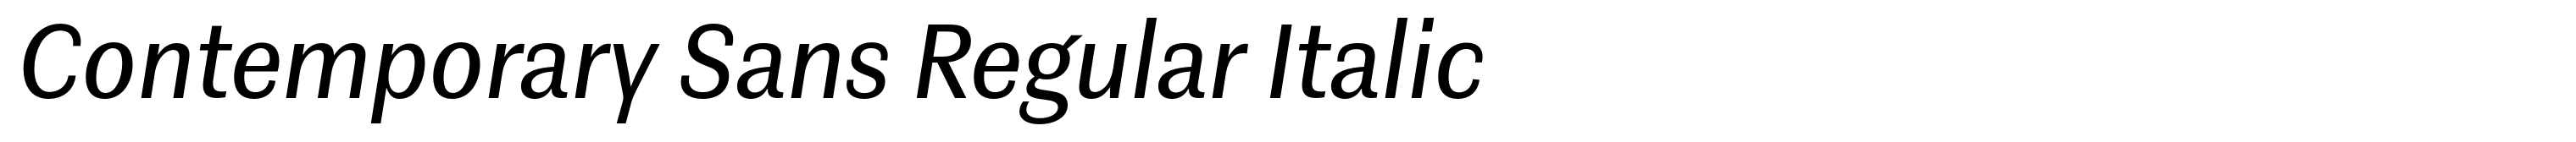 Contemporary Sans Regular Italic